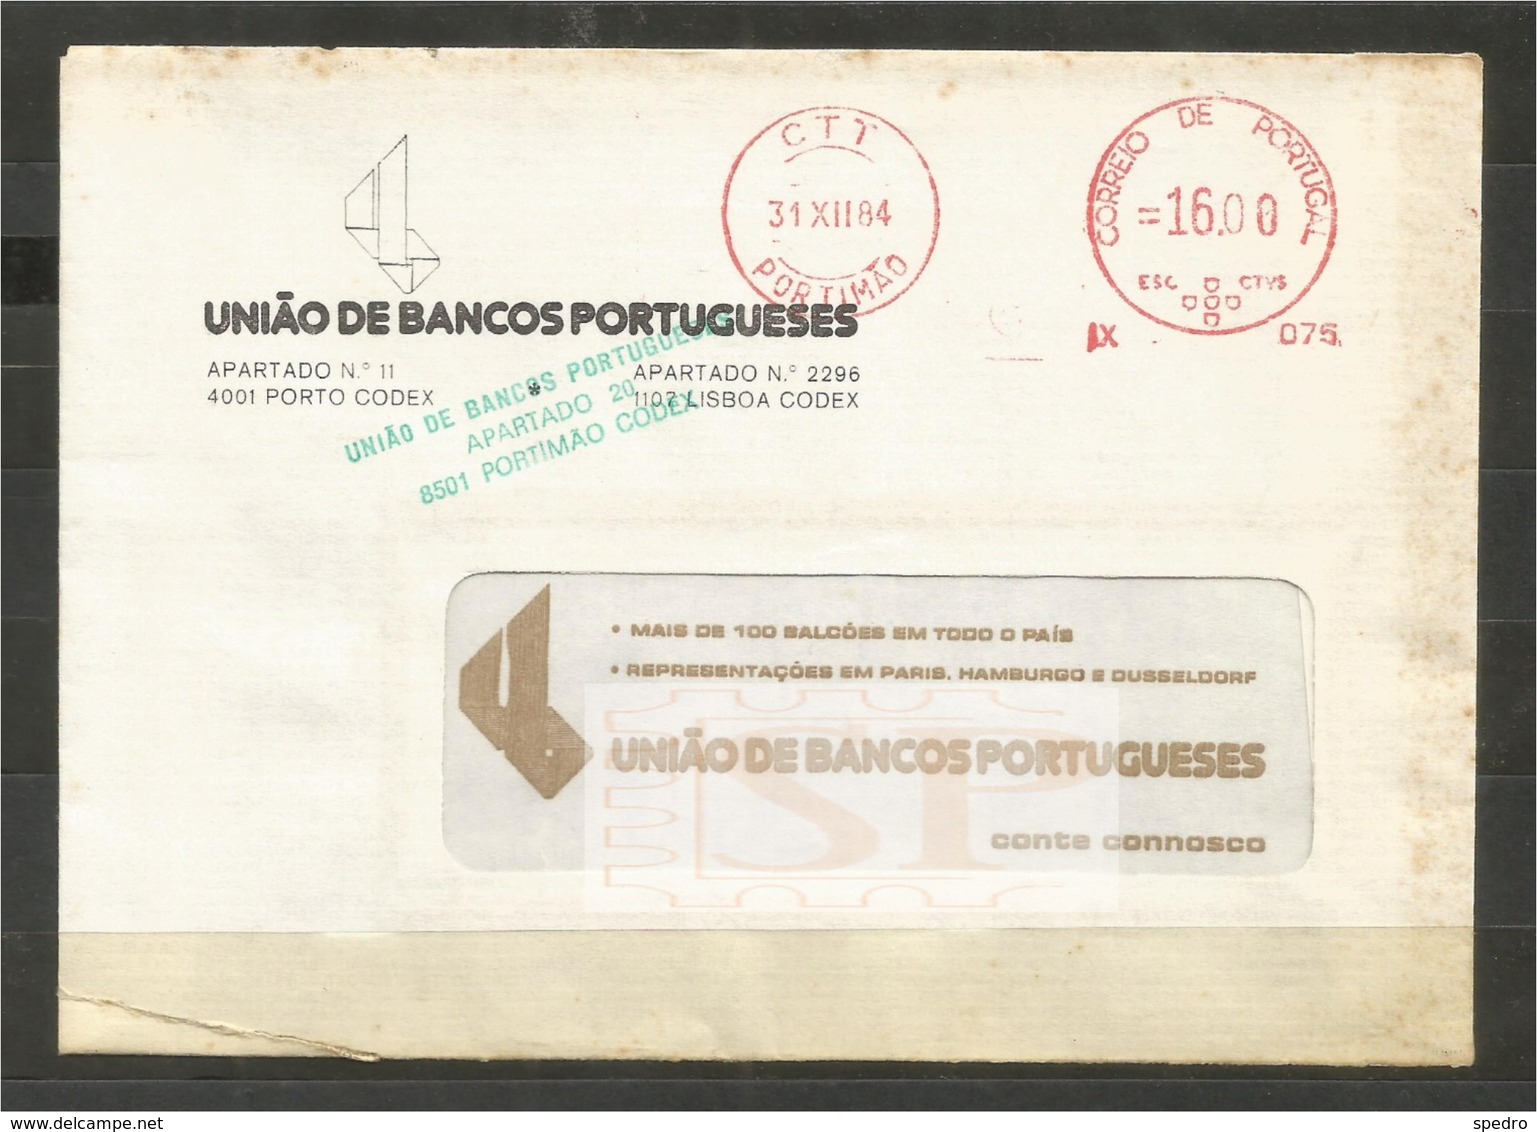 Portugal 1984 Franquia Mecânica Portimão Algarve Ema, Mechanical Franchise União De Bancos Pitney Bowes-GB Automax - Machines à Affranchir (EMA)